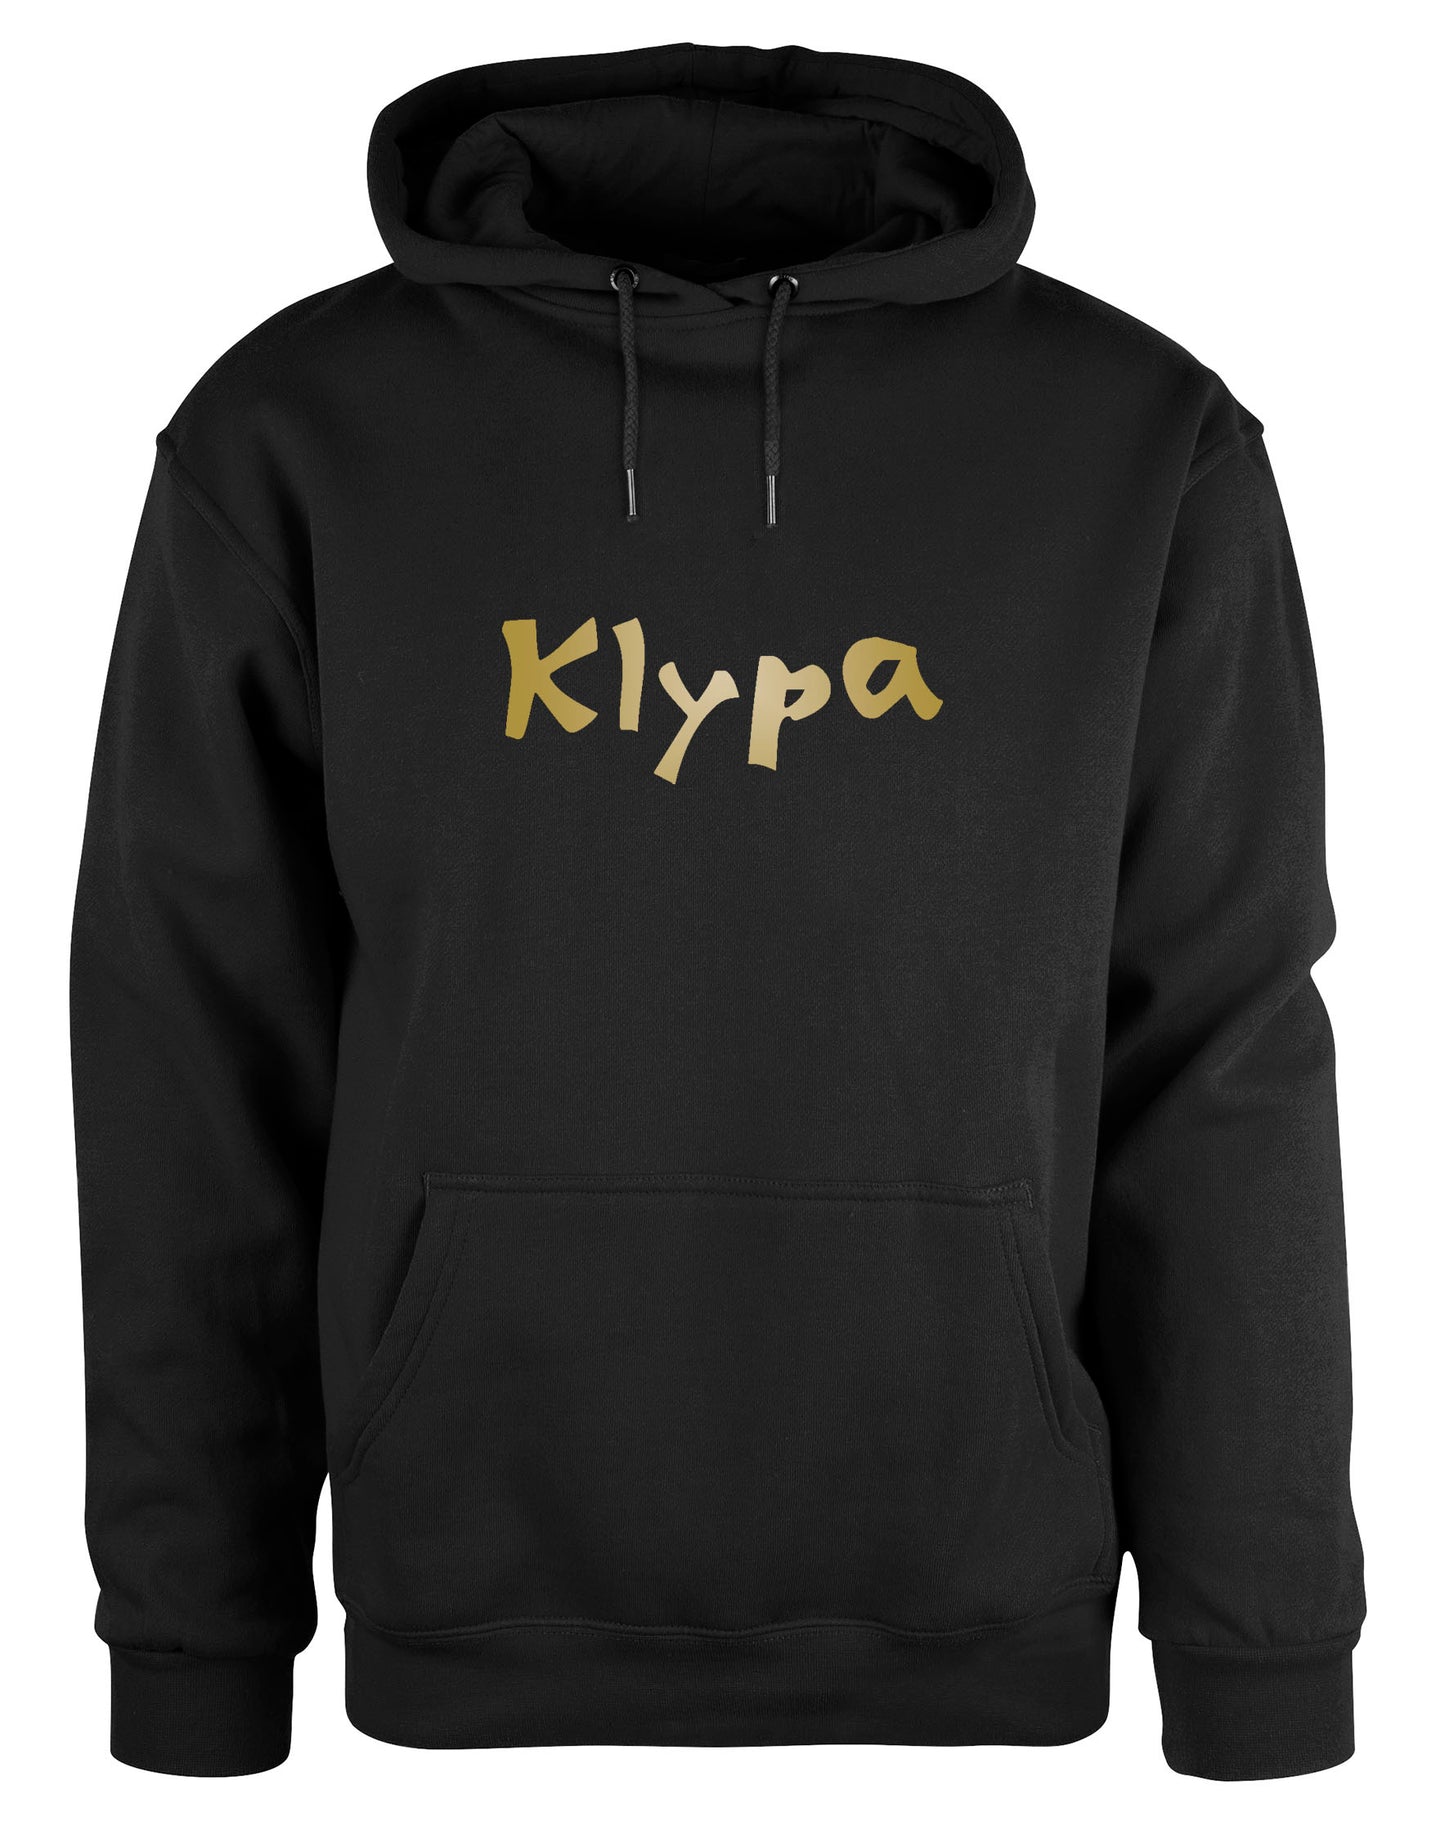 Klypa Gold hoodie